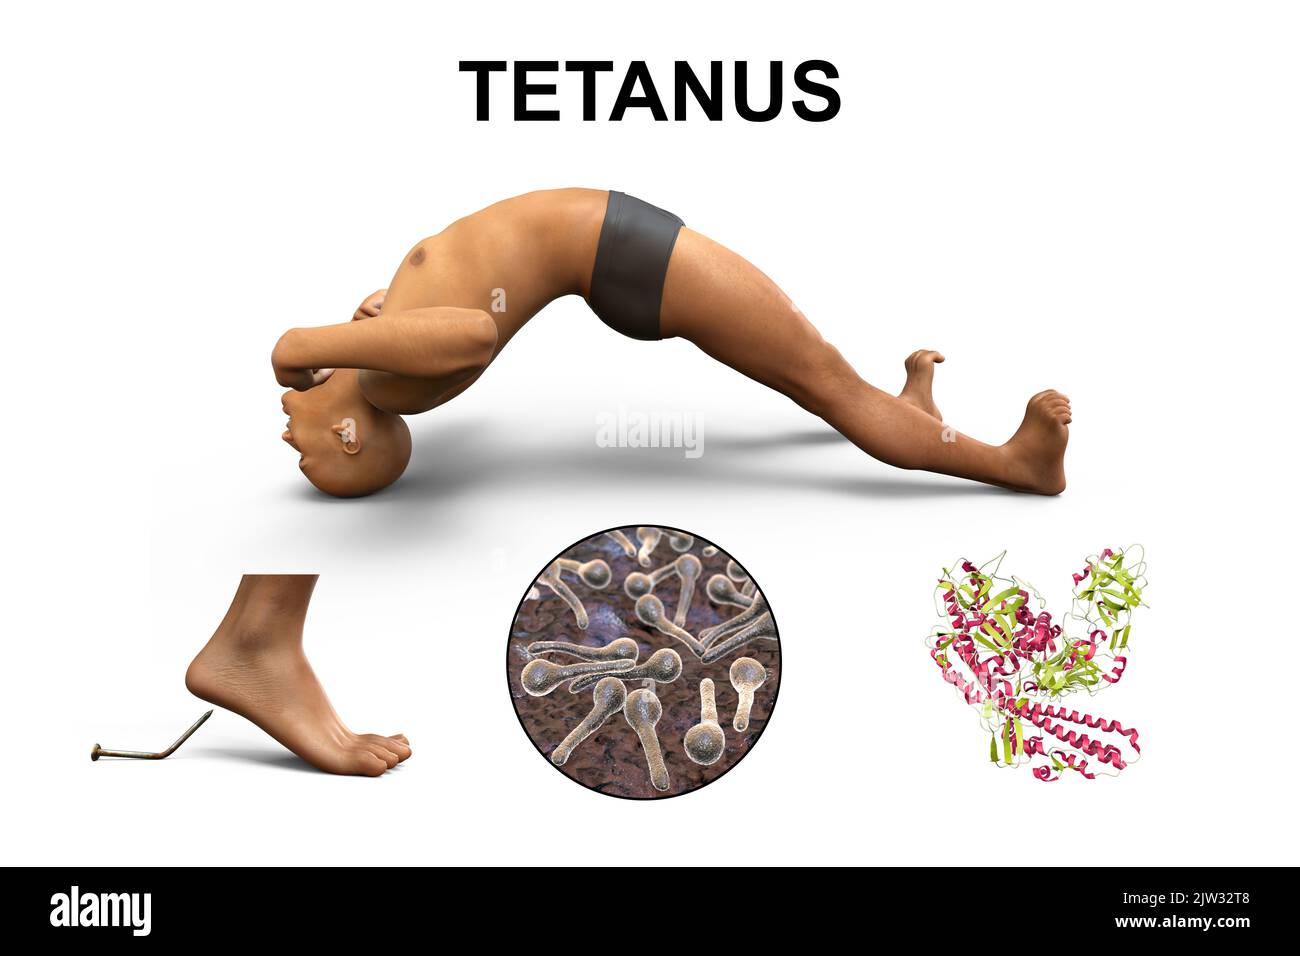 Mechanismus der Tetanus-Krankheit, Illustration. Eine Hautwunde ist mit Clostridium tetani-Bakterien kontaminiert, die ein Neurotoxin produzieren, das das Rückenmark erreicht und spastische Lähmungen verursacht. Der Mann befindet sich im Opisthotonus (Rückwärtsspasmus), einem Zustand schwerer Hyperdehnung und Spastik. Stockfoto